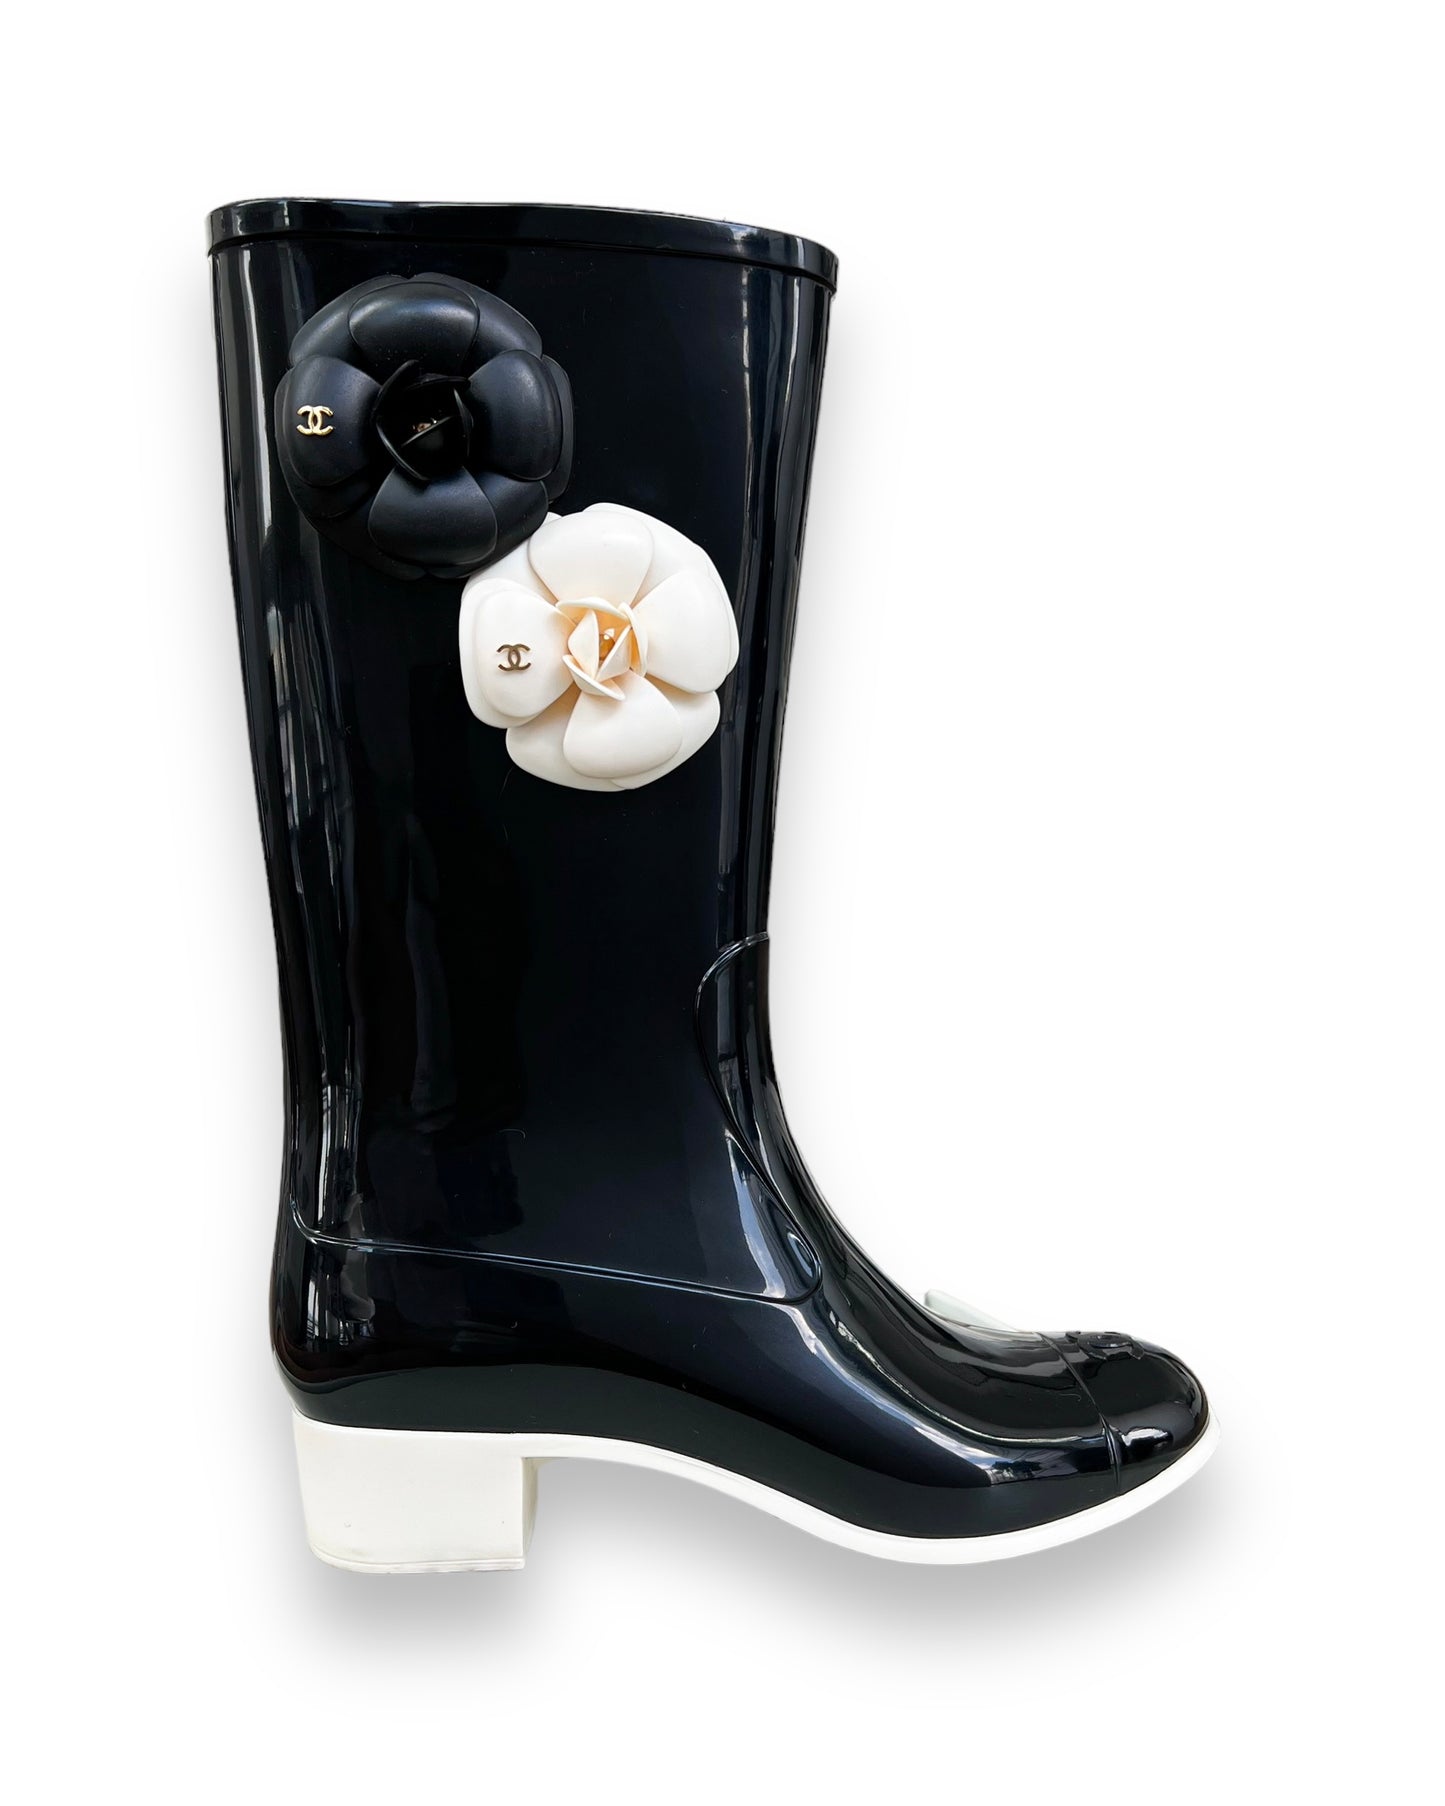 Chanel CC Rubber Rain Boots